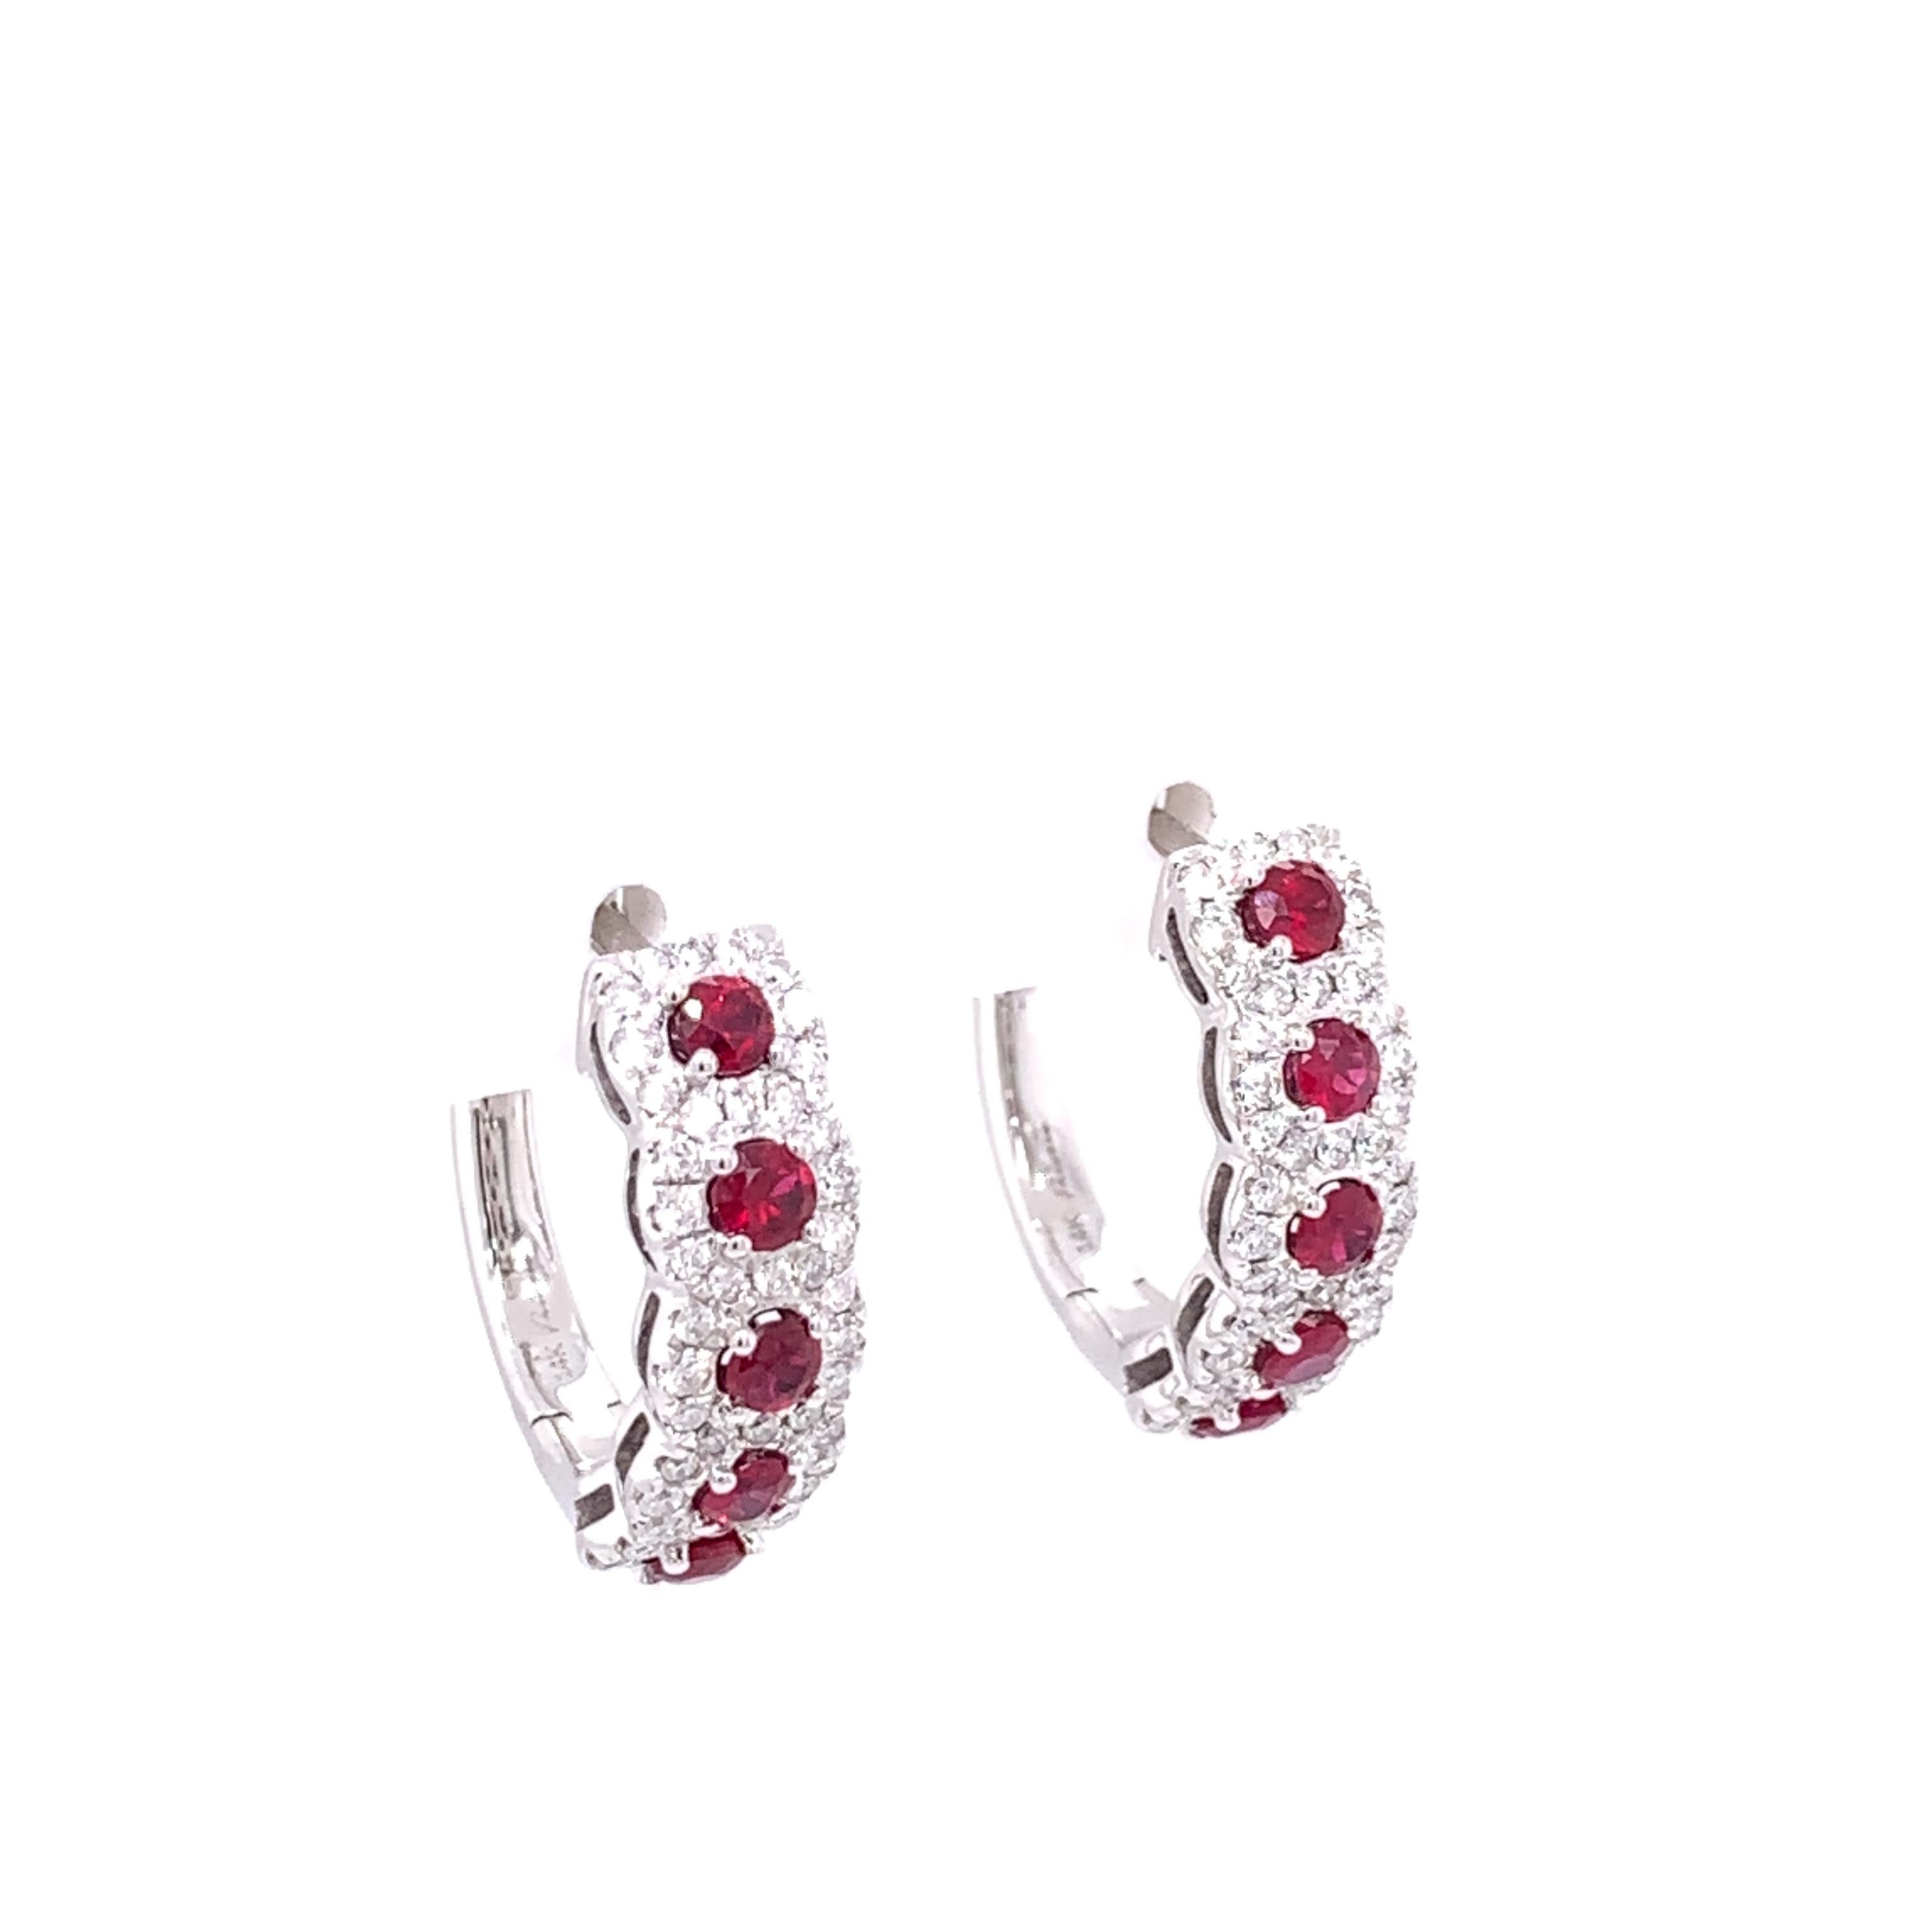 Ein wunderschönes Paar Rubine und Diamanten Halo-Ohrringe ca. 18mm, die die perfekte Größe für den täglichen Gebrauch ist. Diese Ohrringe bestehen aus 10 runden Rubinen aus 14 Karat Weißgold, die von insgesamt 96 runden Brillanten in den Halos